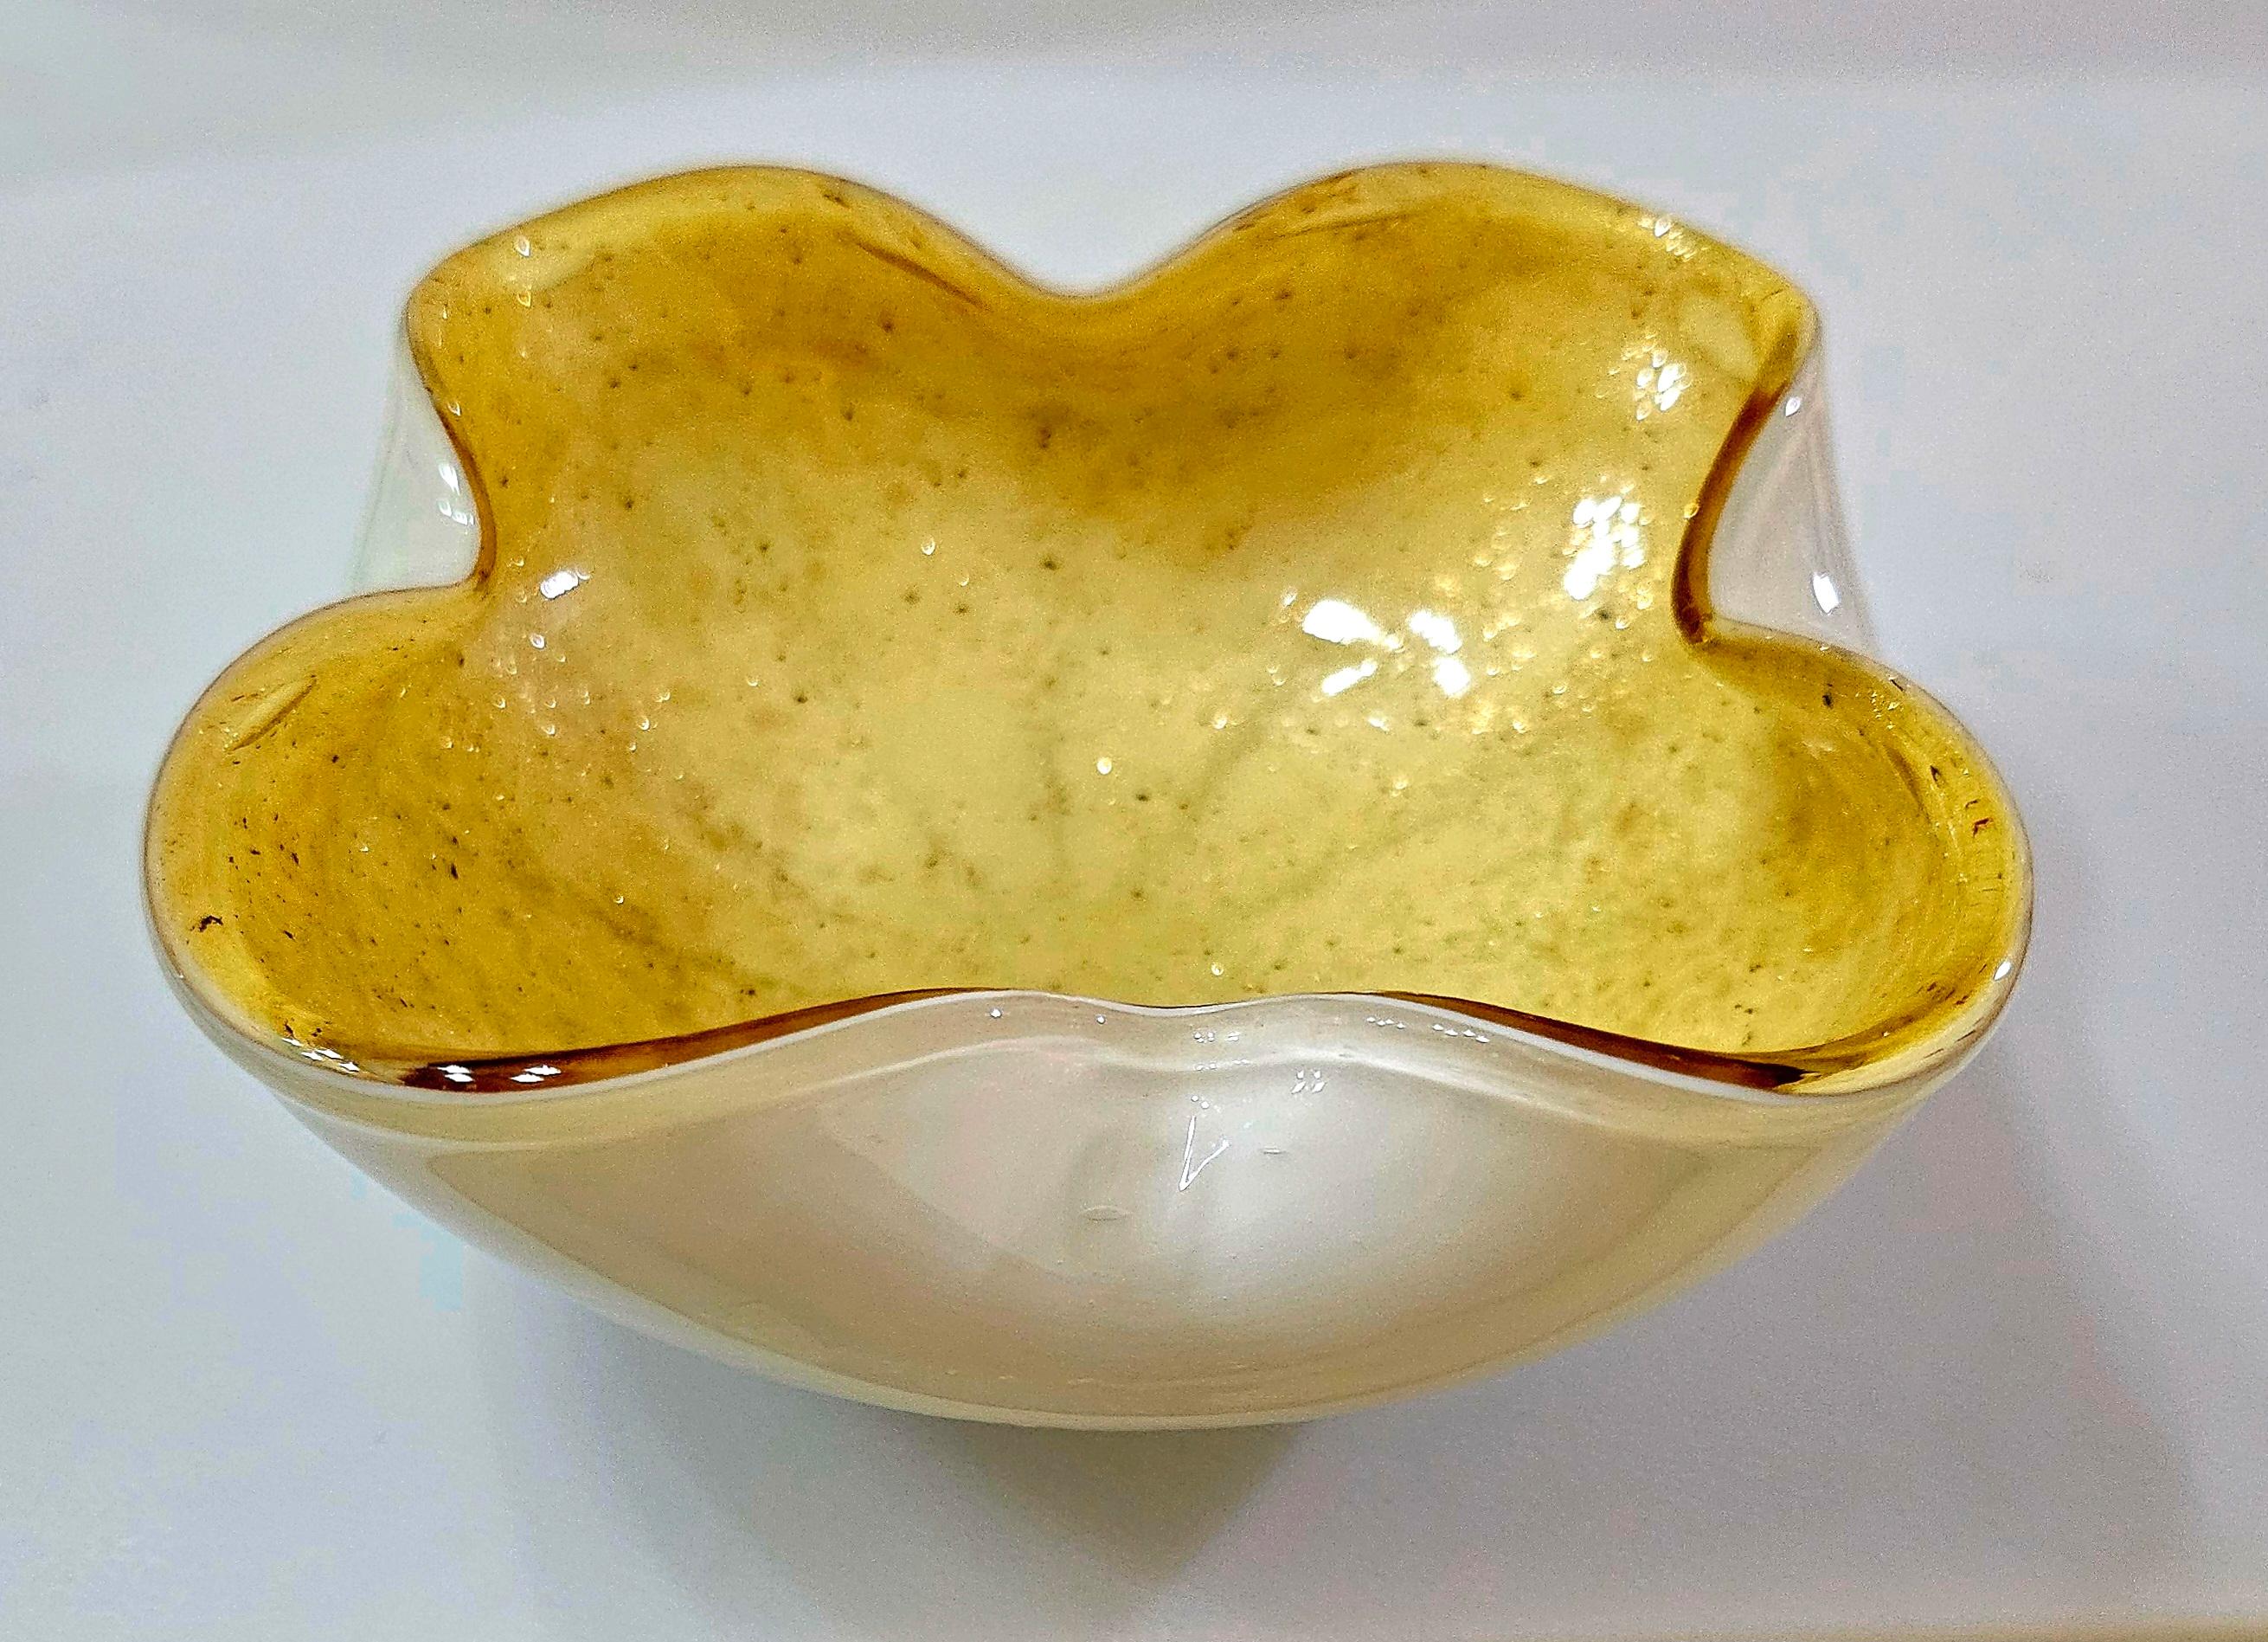 Vintage Murano Glass Bowl / Dish / Ashtray / Vide Poche
L'intérieur présente de fines paillettes d'or qui semblent 